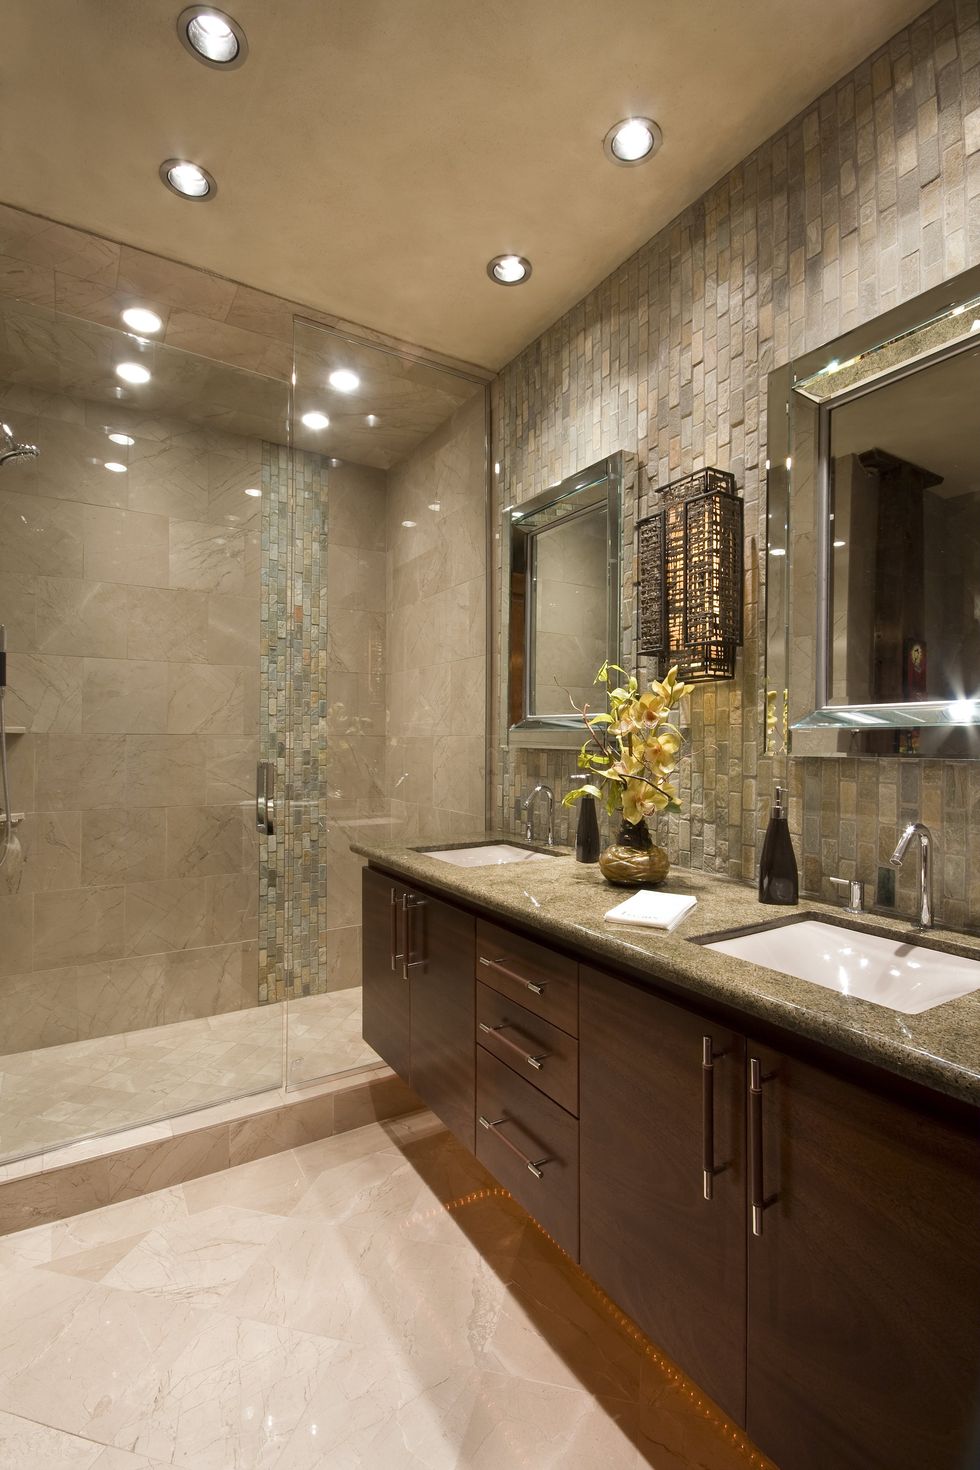 100 Best Bathroom Counter Decor ideas  bathroom counter decor, counter  decor, bathroom counters